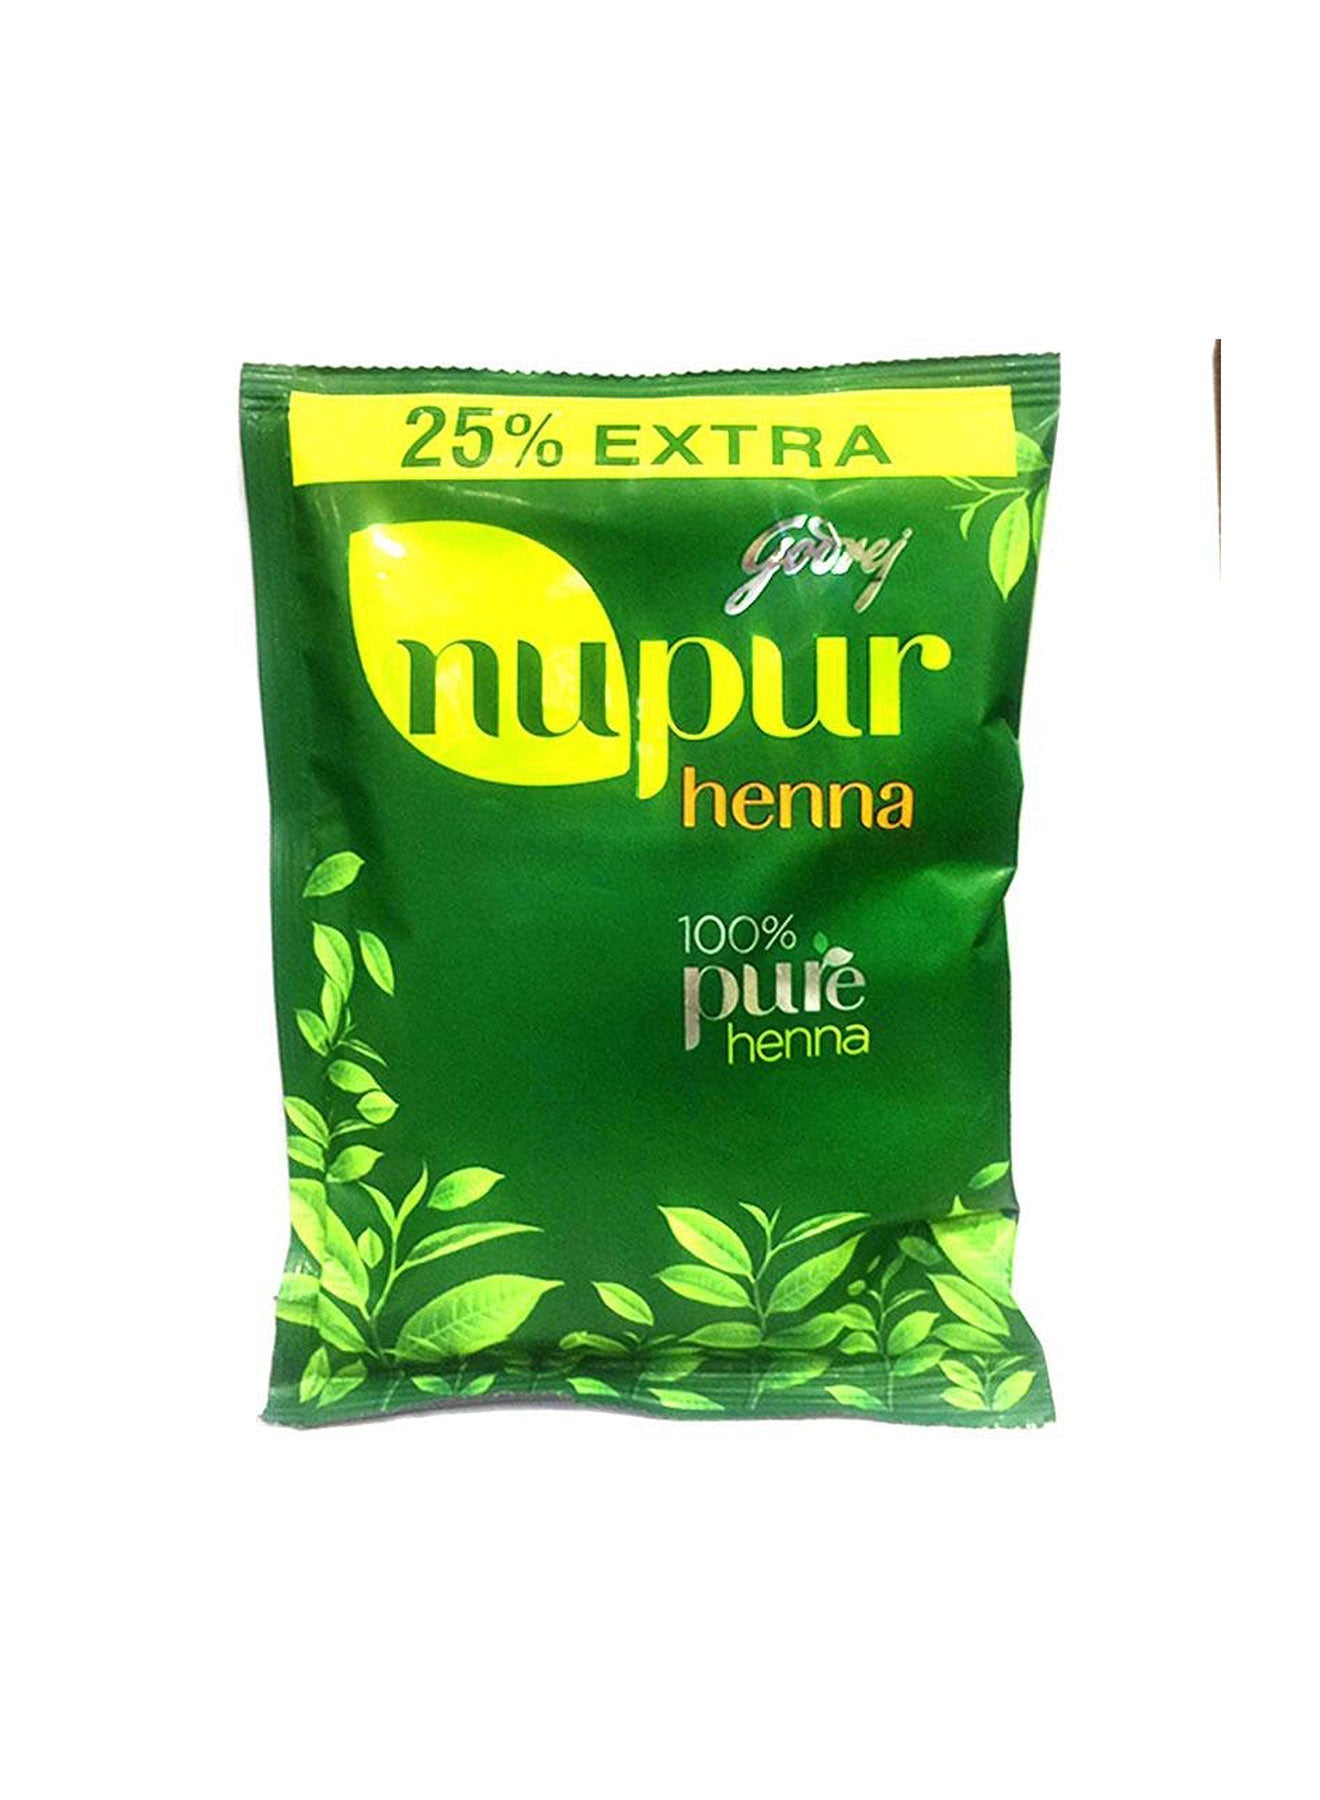 Godrej Nupur Henna 100 Pure Henna 25 Extra 150g Value Pack of 3 